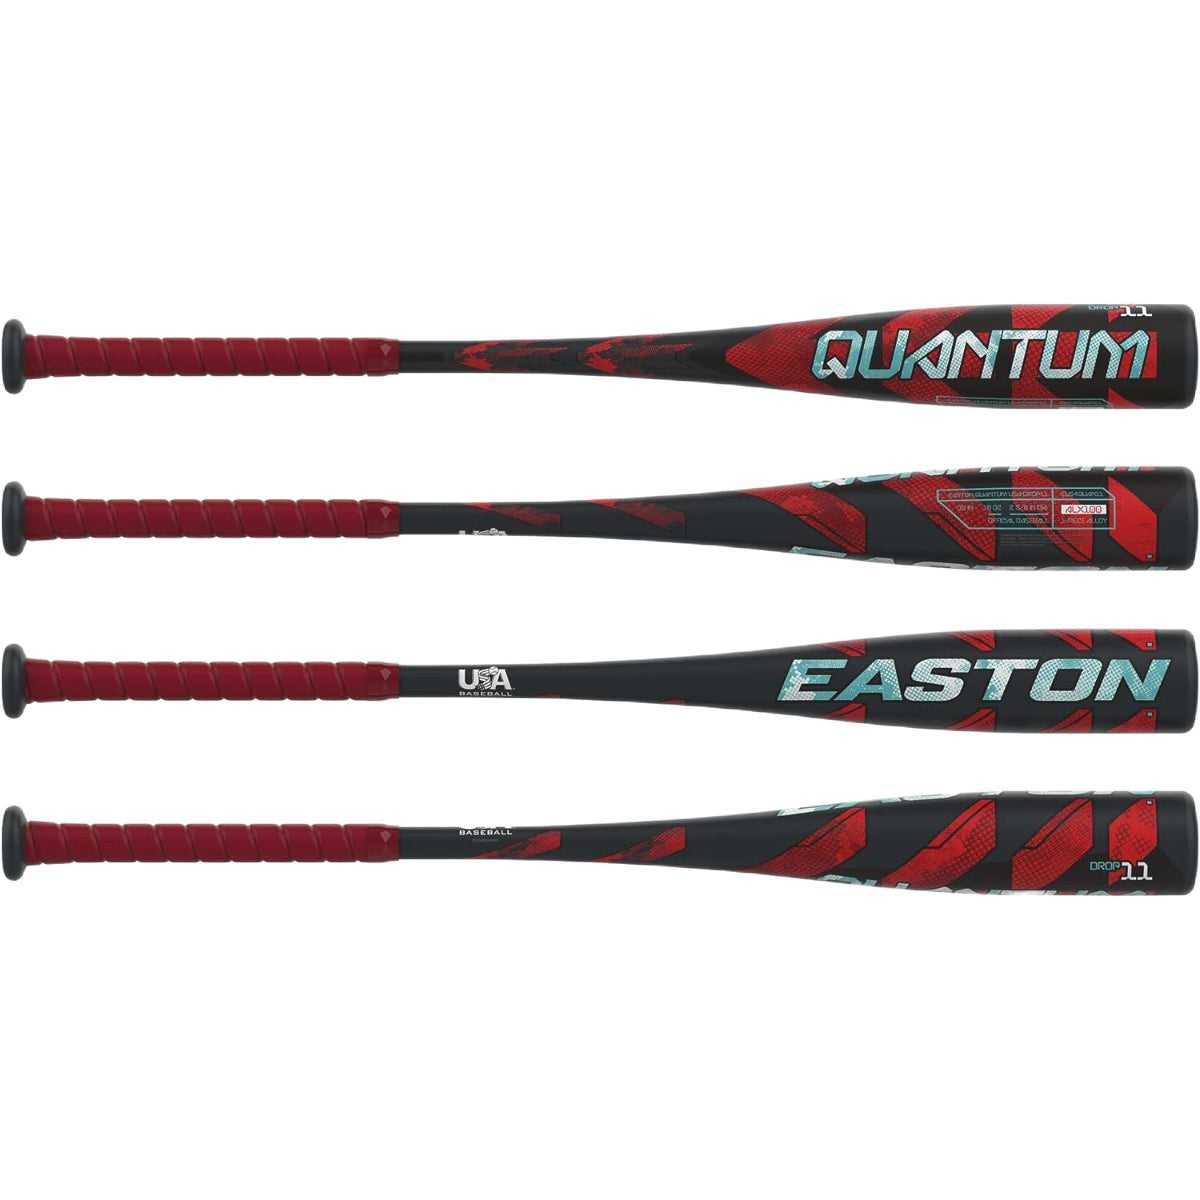 Easton 2024 Quantum -11 USA Approved Bat 2 5/8&quot; EUS4QUAN11 - Black Red - HIT a Double - 2